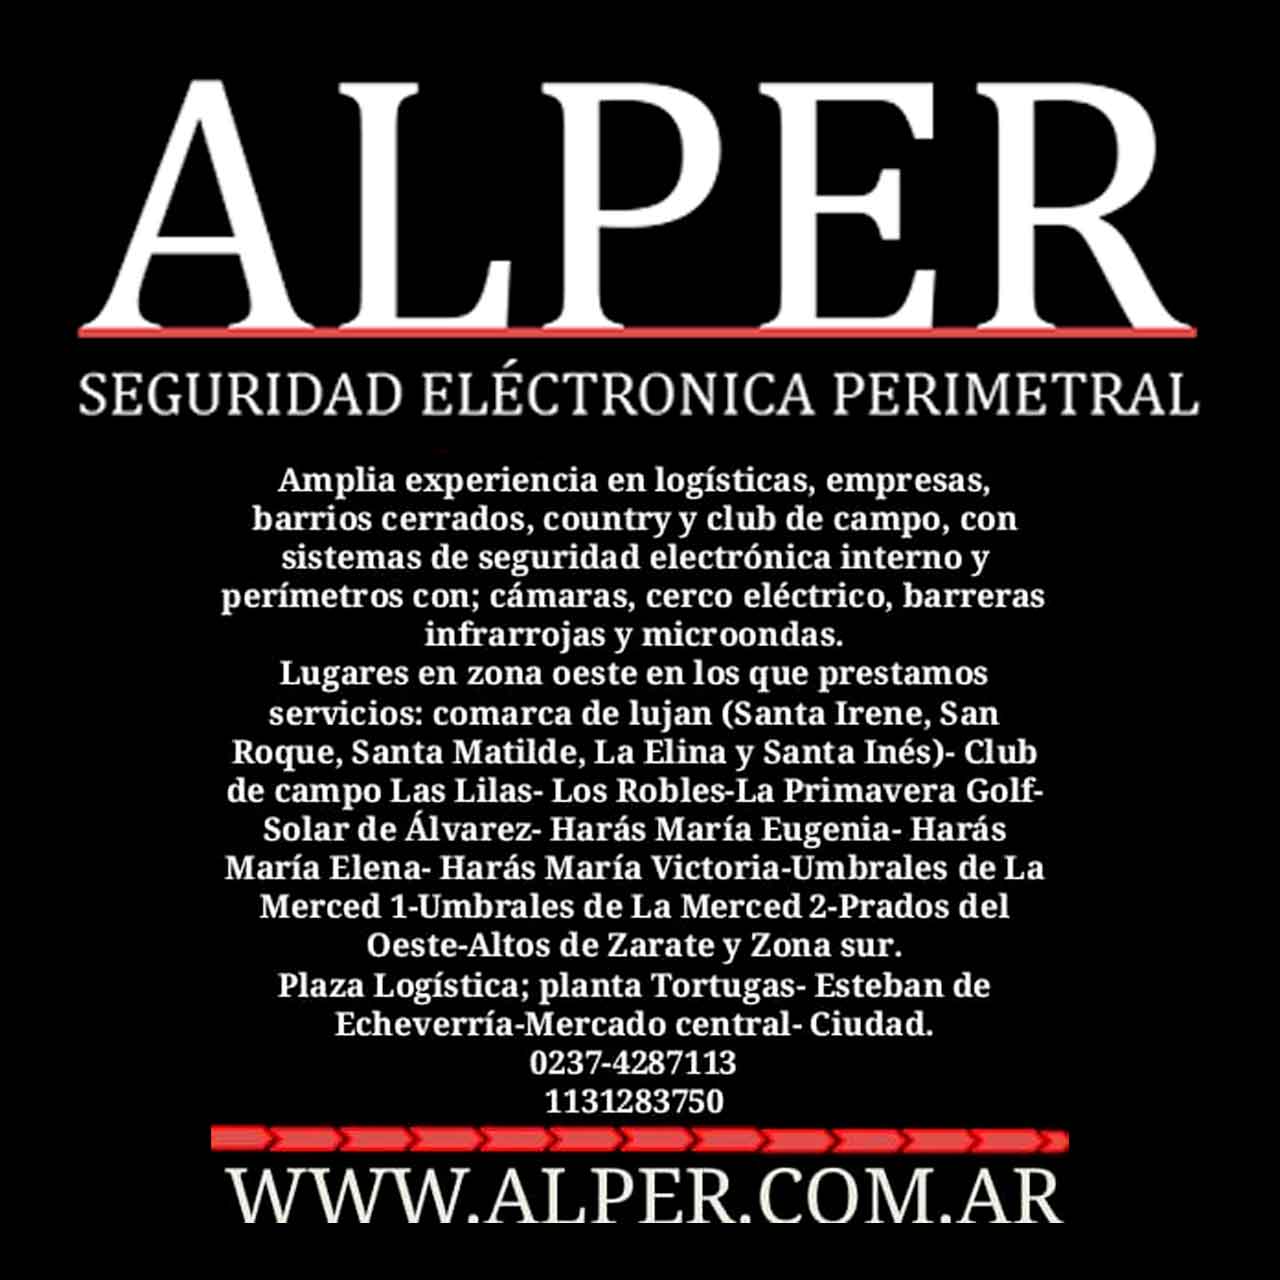 ALPER SEGURIDAD ELECTRÓNICA PERIMETRAL